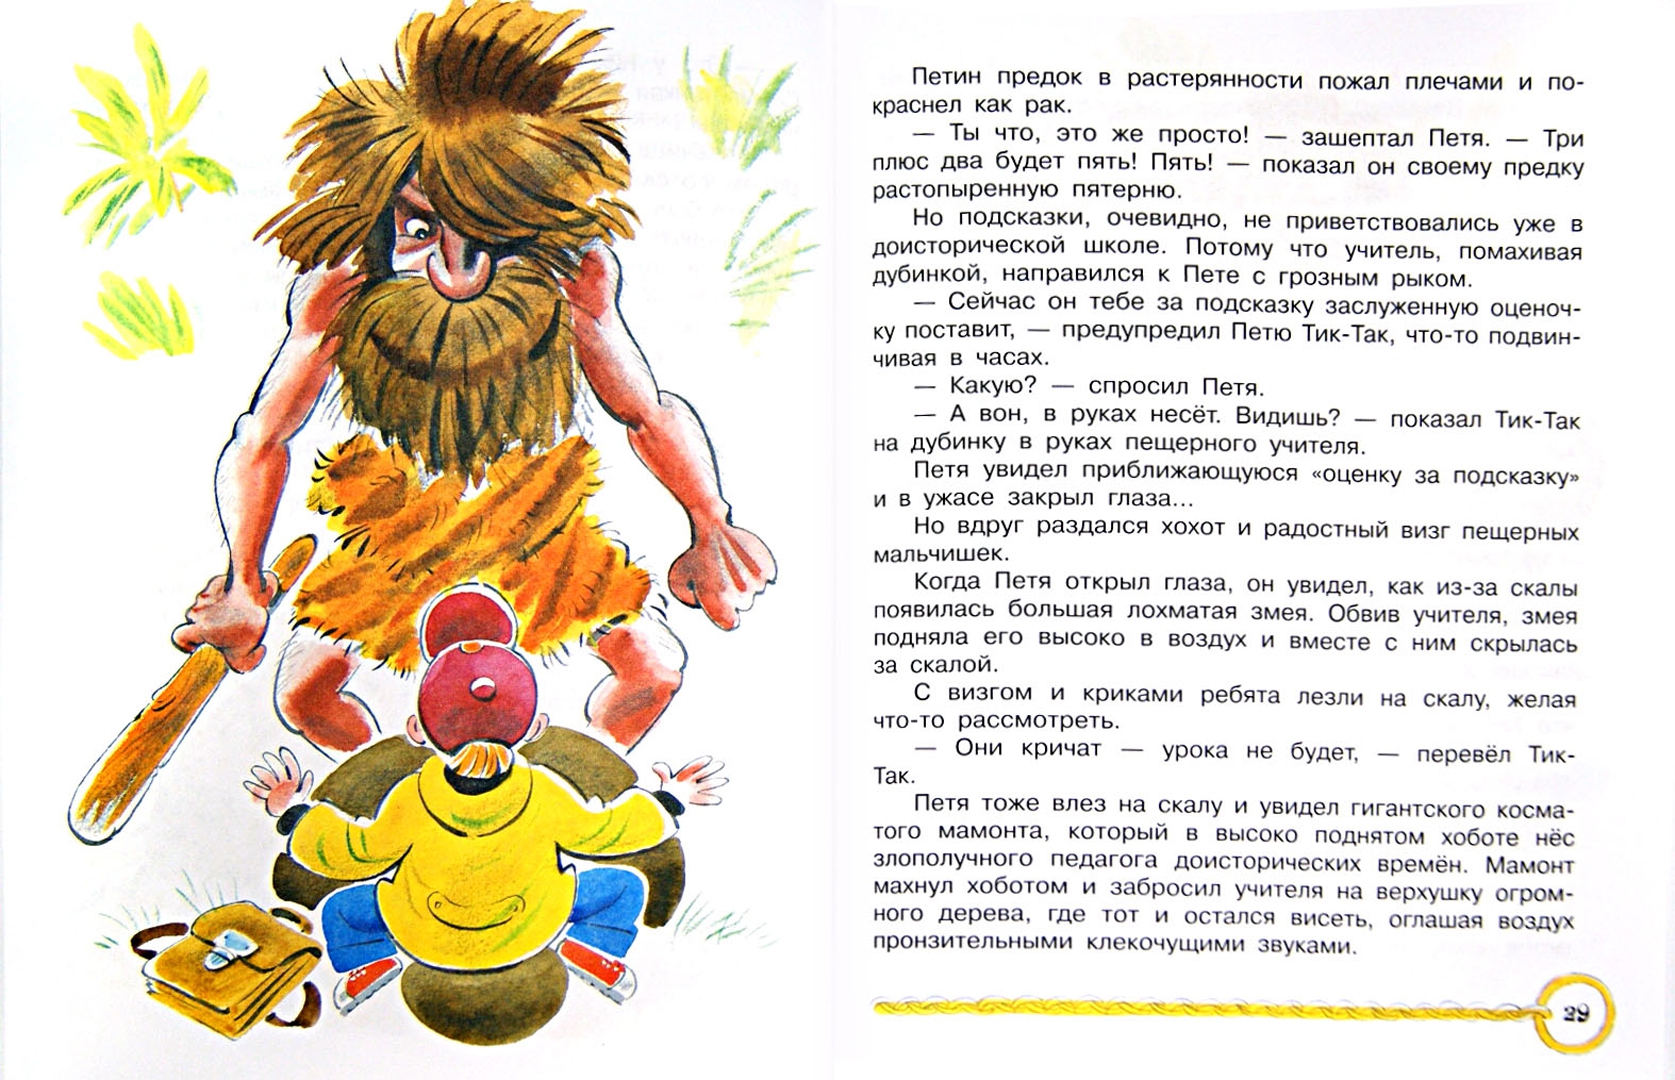 Иллюстрация 2 из 22 для Петя Иванов и волшебник Тик-Так - Владимир Сутеев | Лабиринт - книги. Источник: Лабиринт